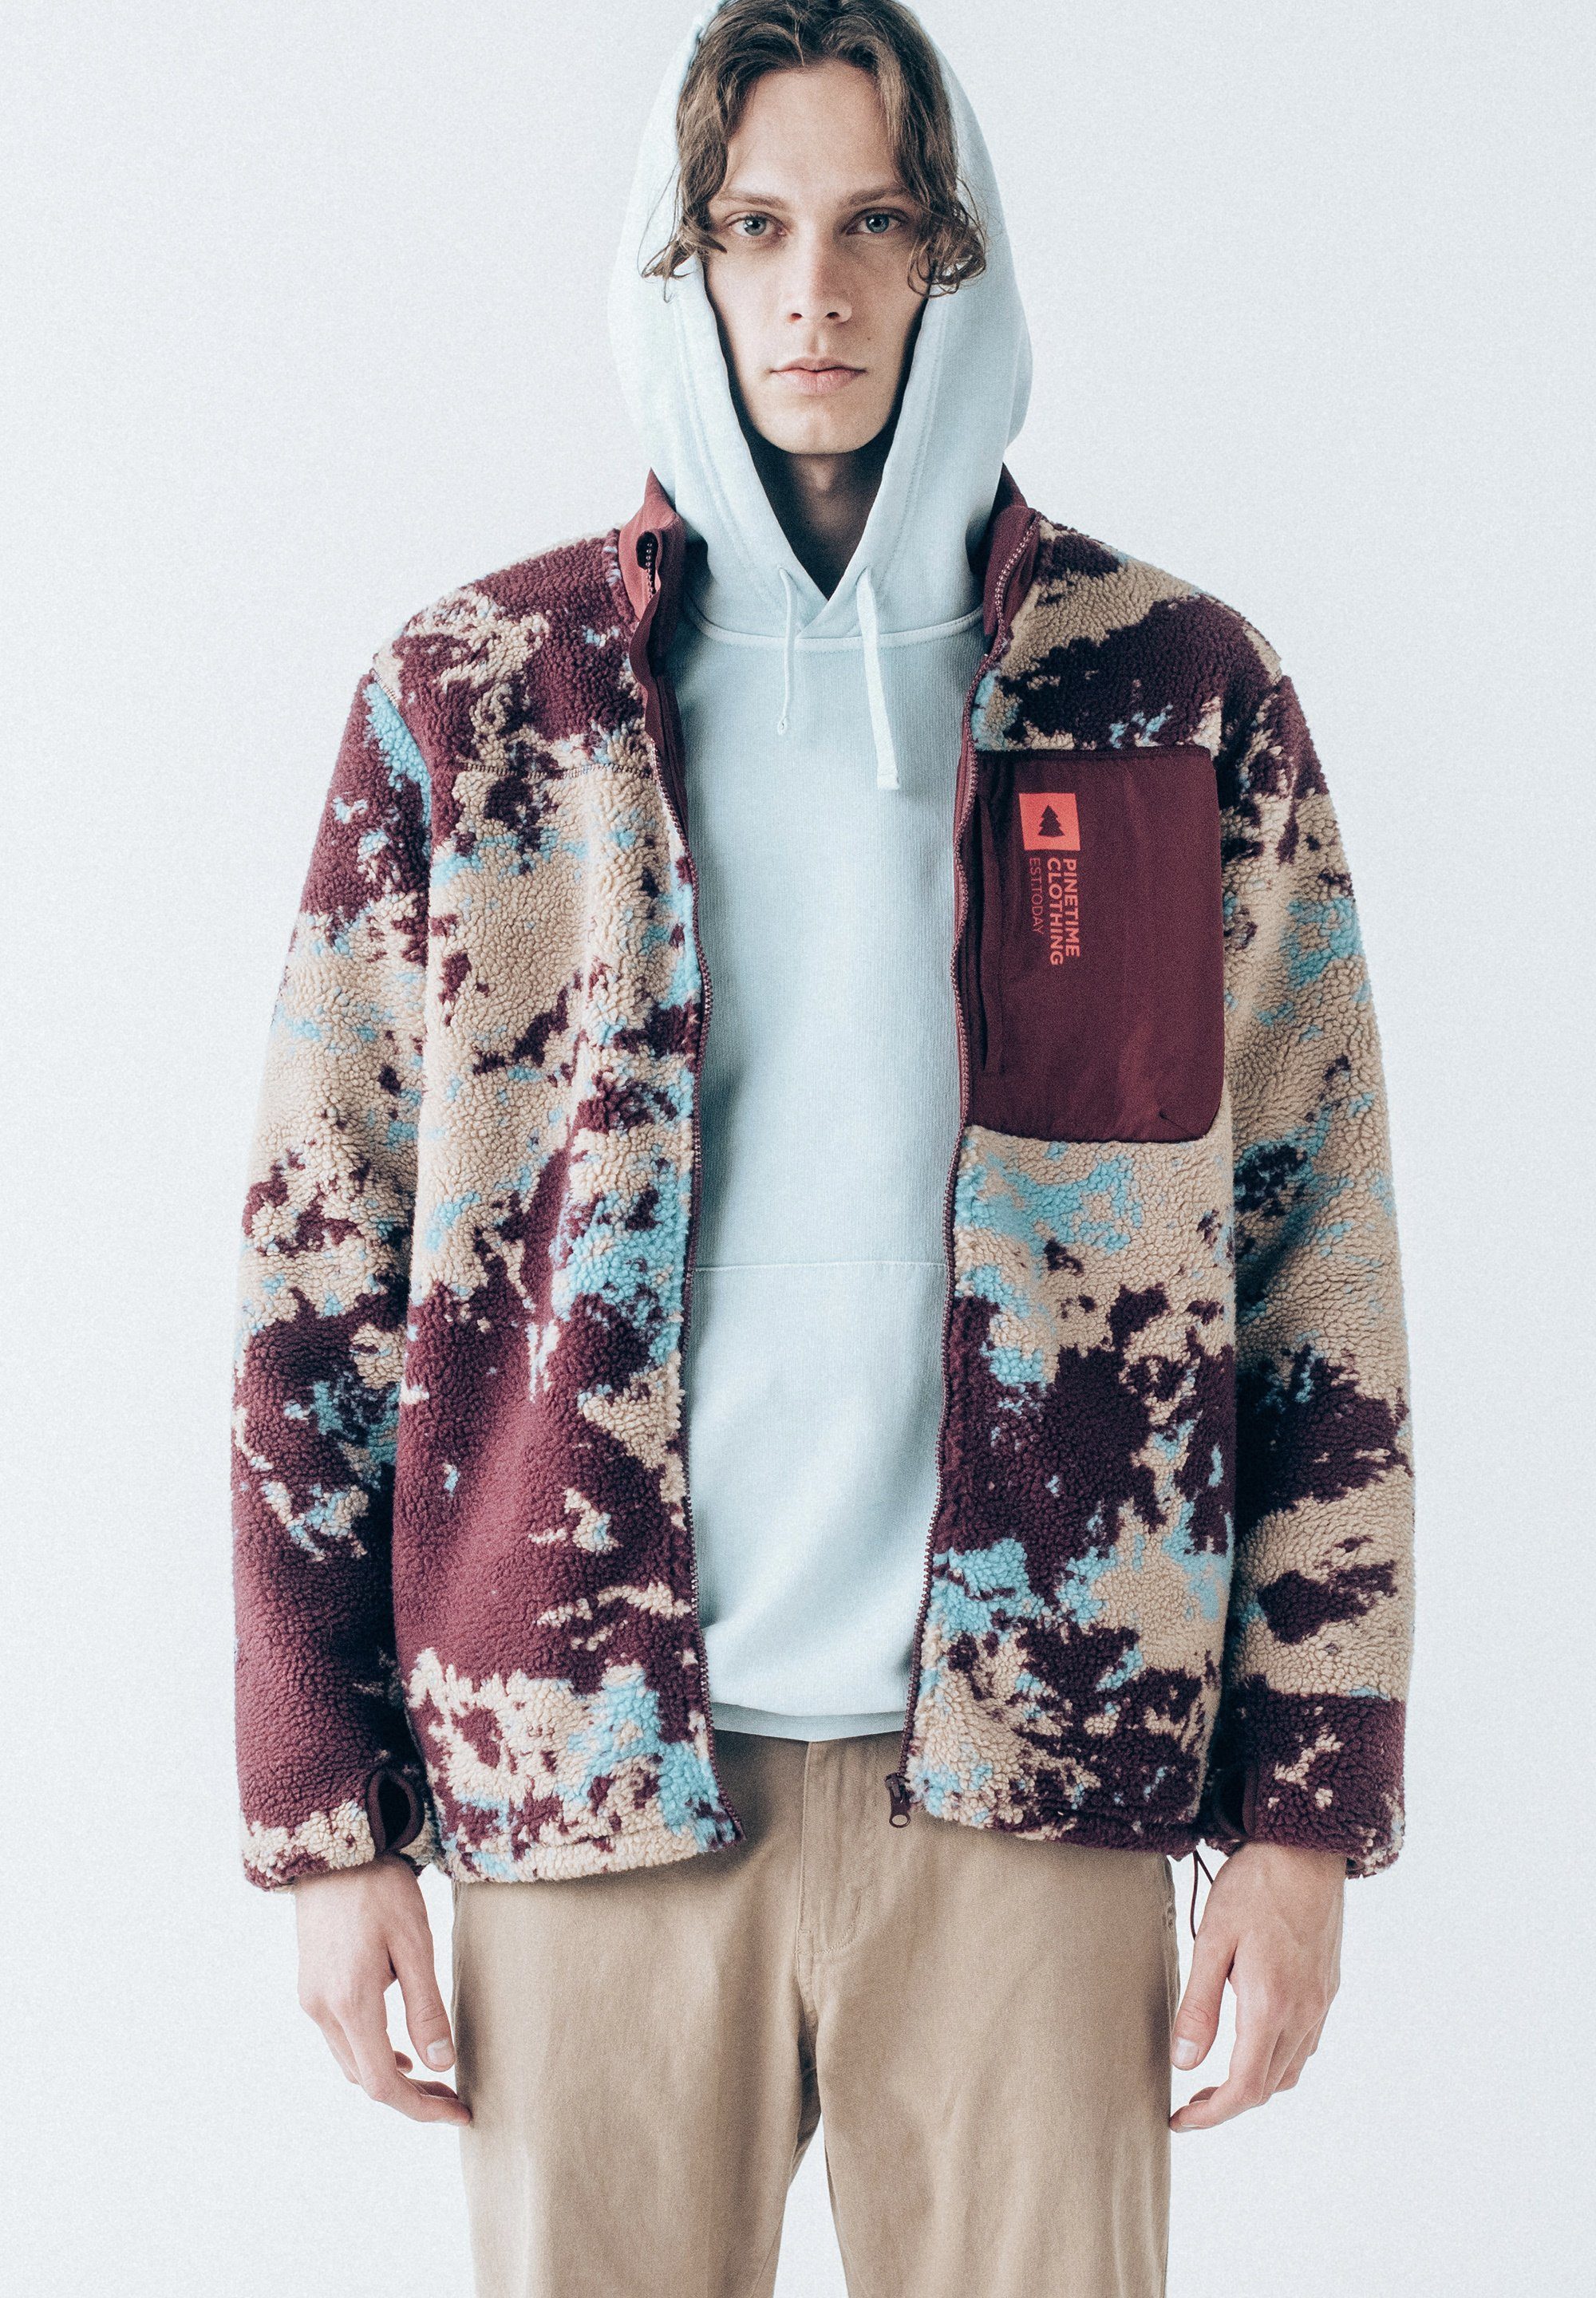 Pinetime Clothing Fleecejacke The Moss Jacket Sherpa-Futter bietet außergewöhnliche Wärme für kühle Tage ruby